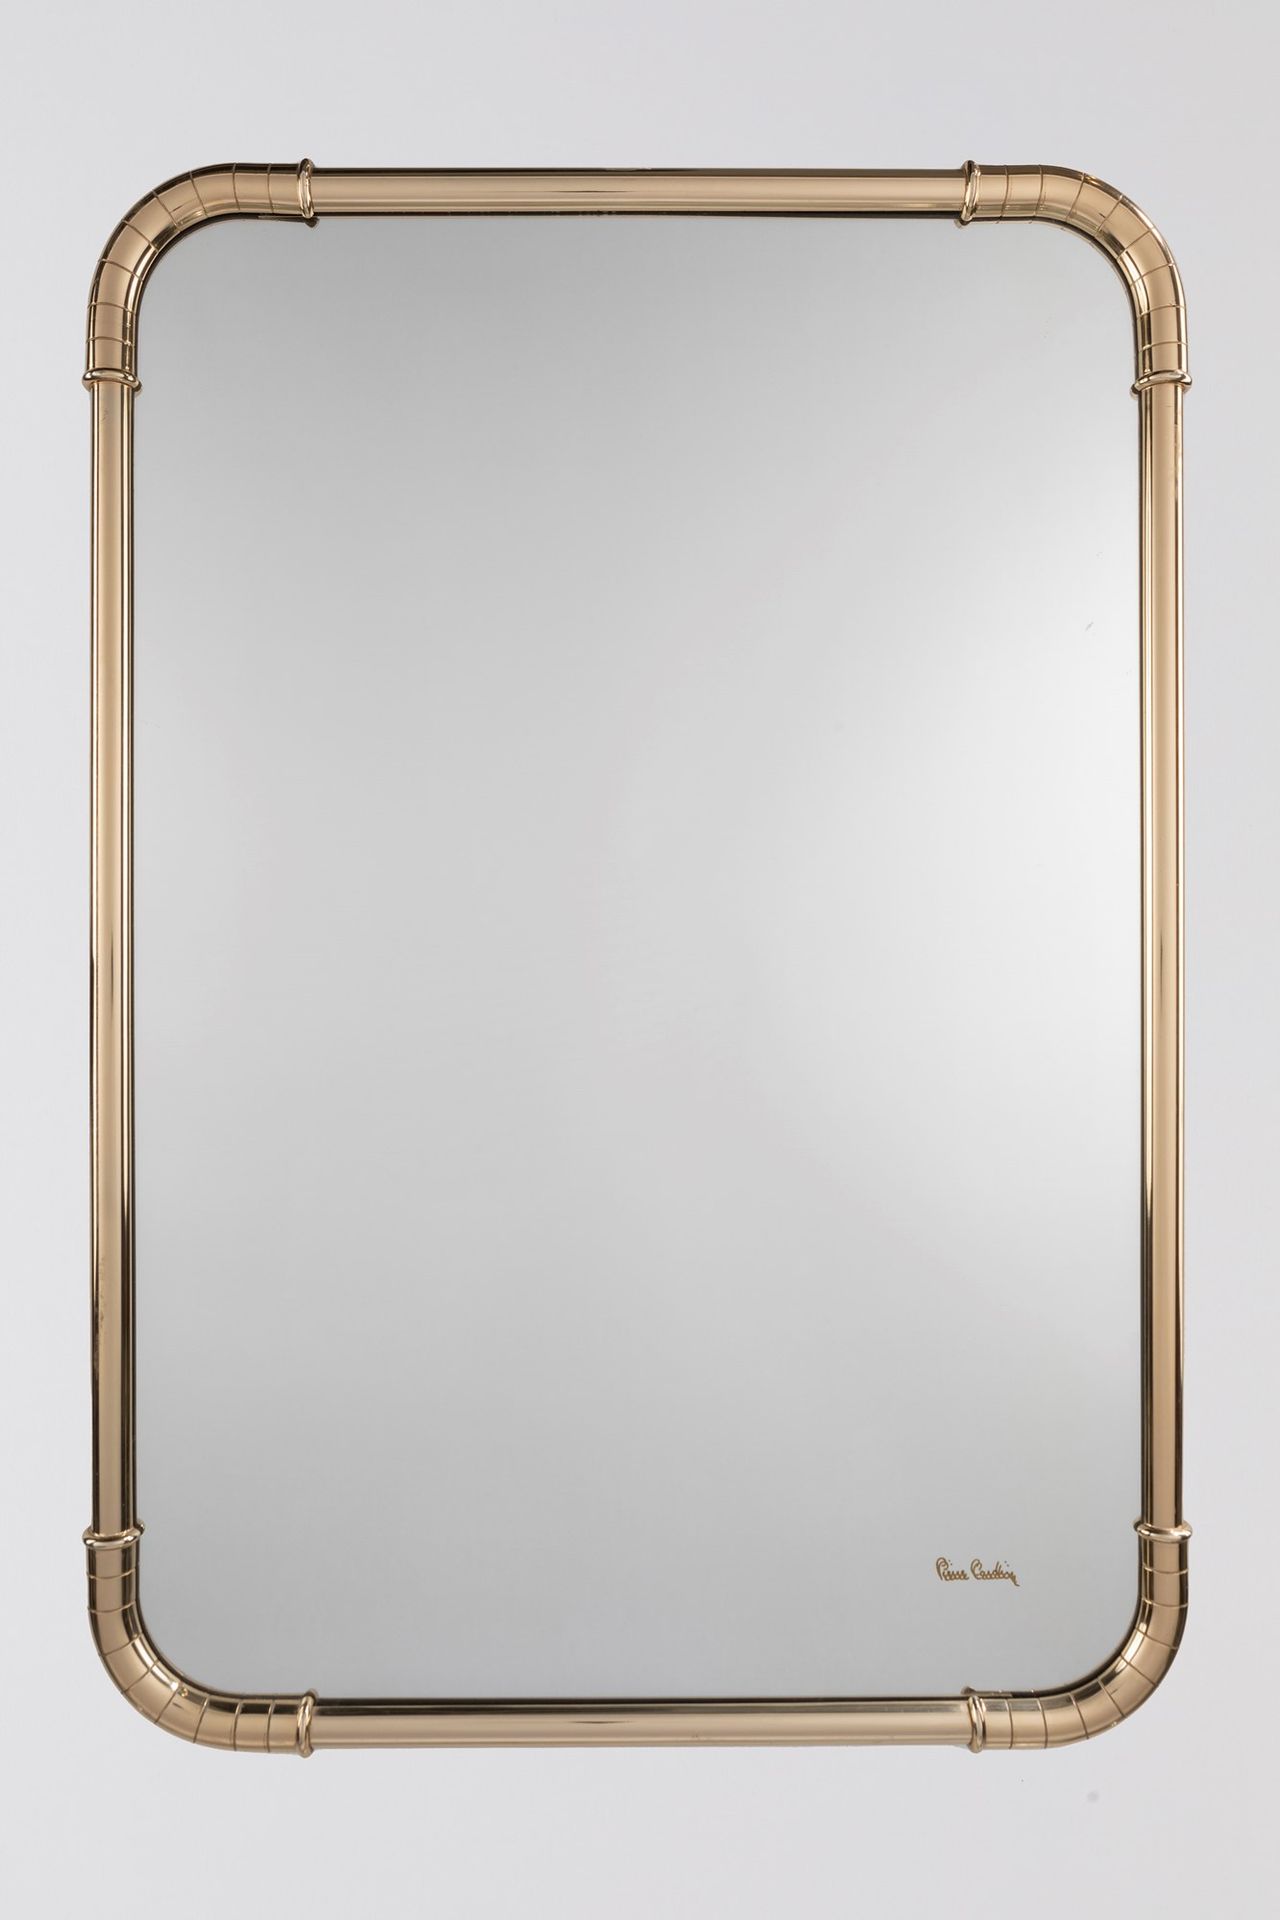 PIERRE CARDIN Miroir, 1970 env.

H 65 x 95 cm
avec cadre en laiton. Signe origin&hellip;